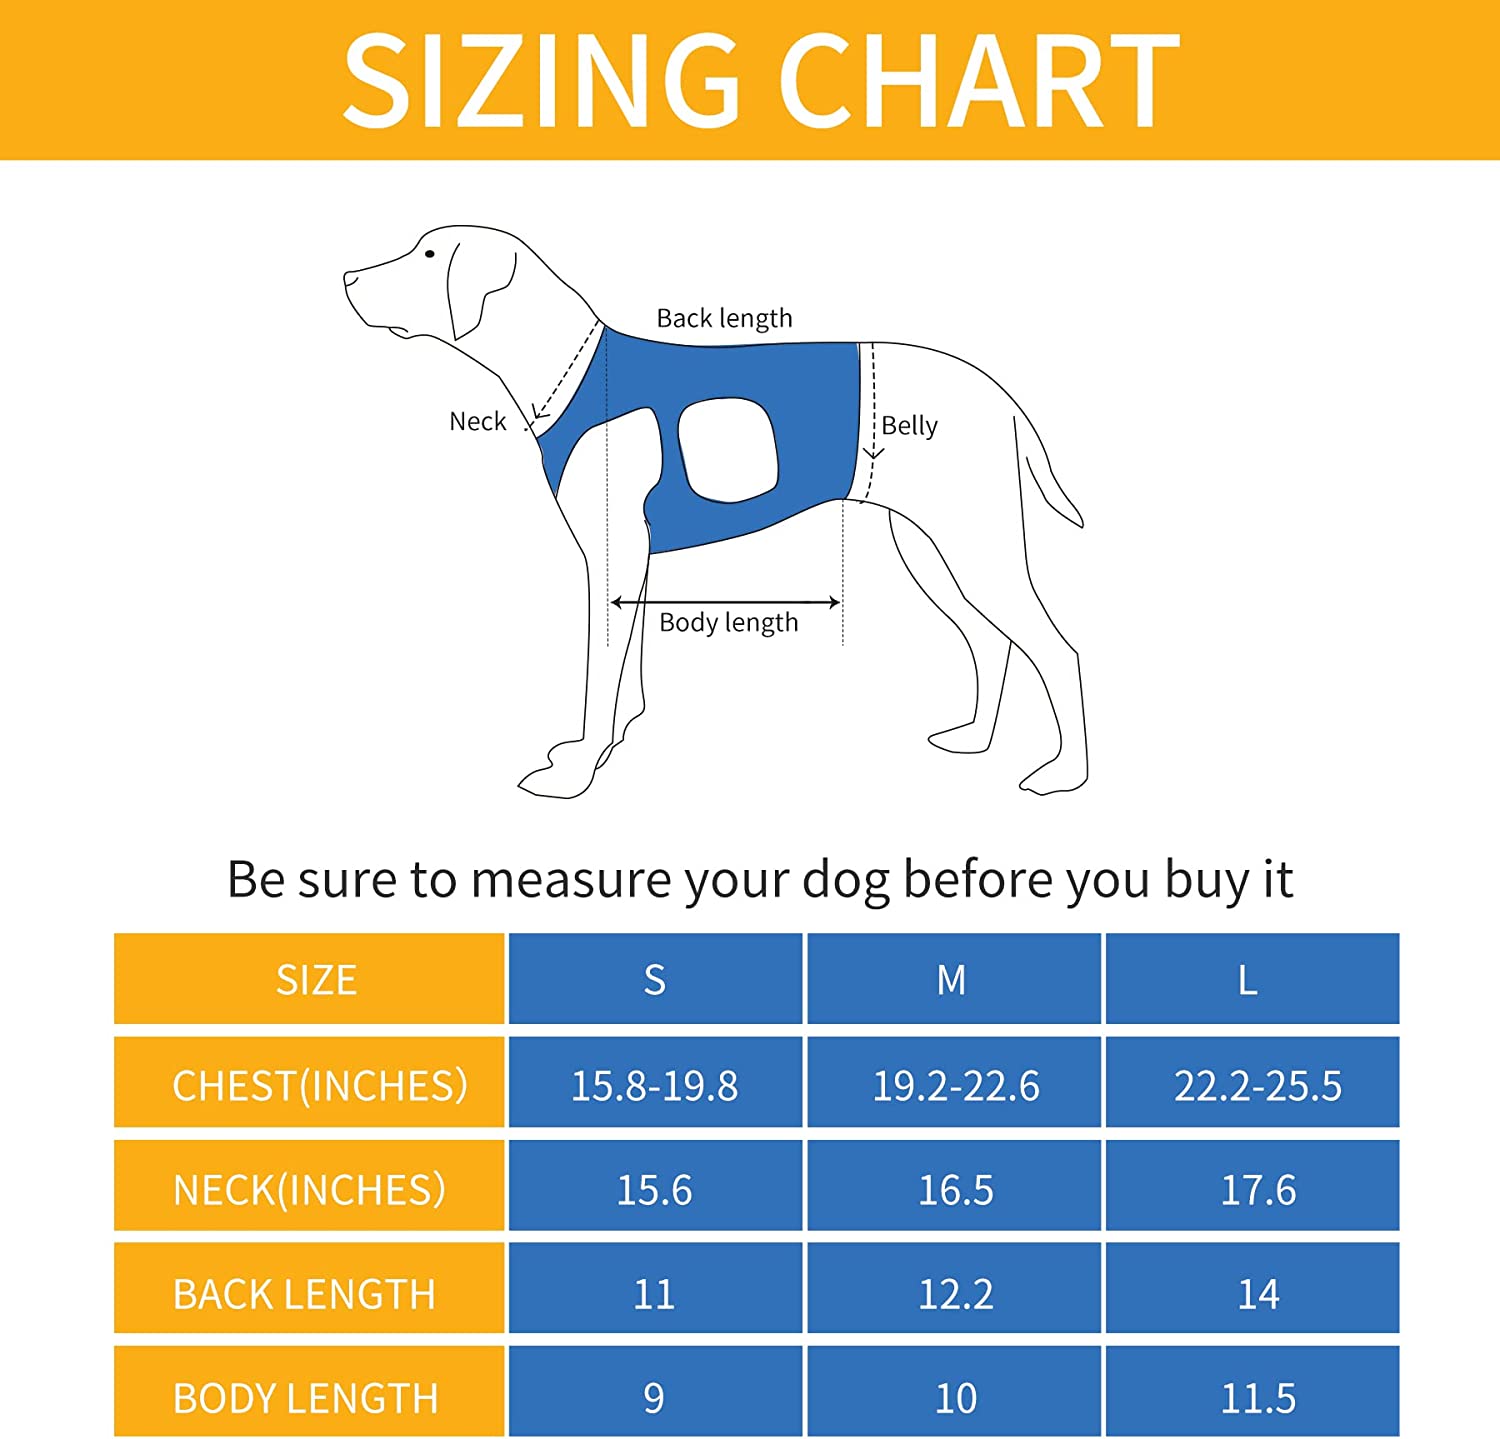 تسمه بالابر سگ قابل جدا شدن است و طول آن را می توان برای افراد با قدهای مختلف تنظیم کرد